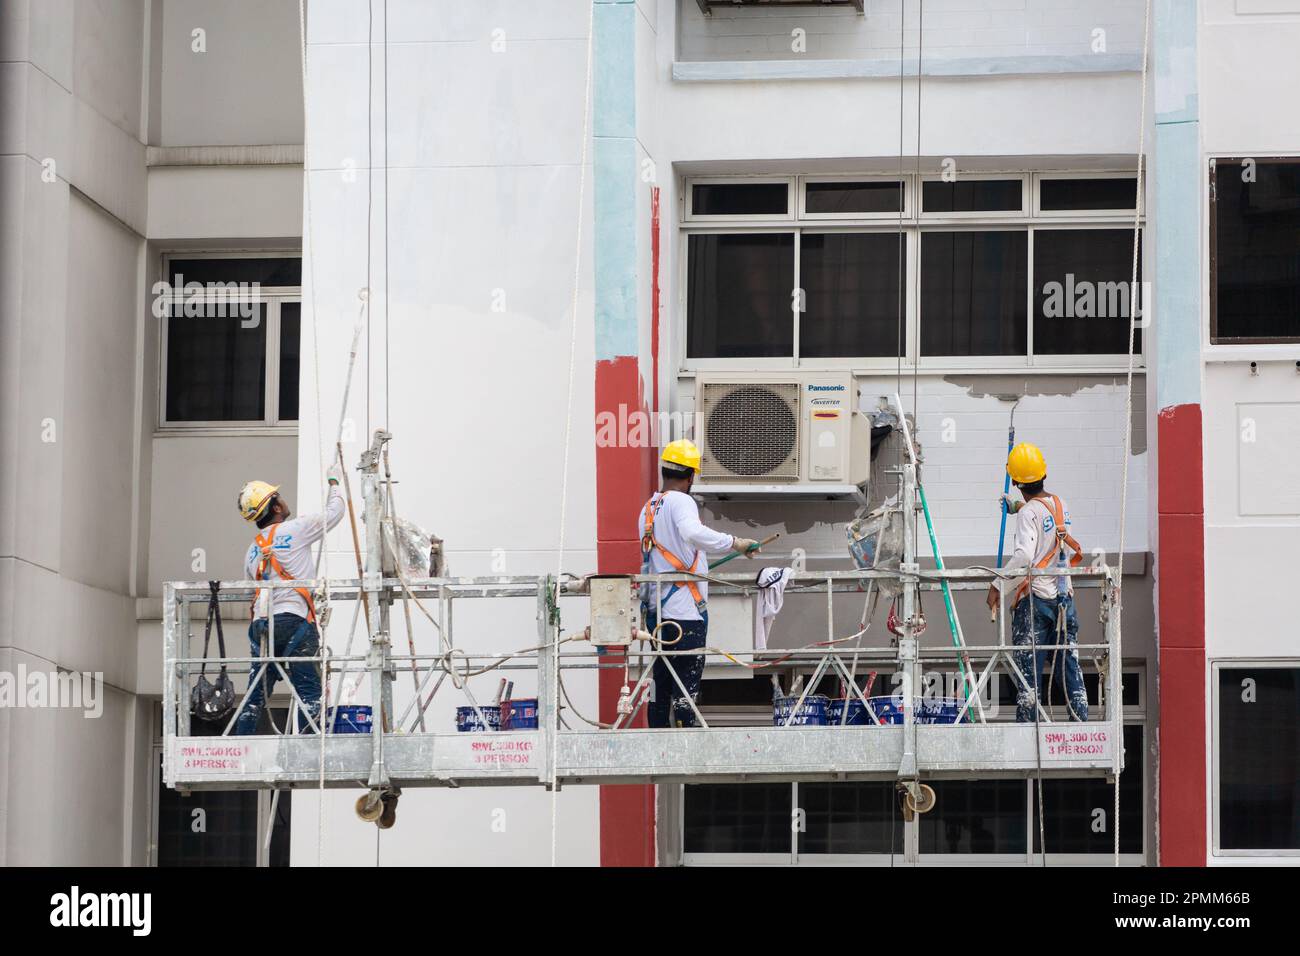 Gros plan de l'ascenseur d'échafaudage avec 3 peintres peignent une nouvelle couche de peinture sur l'extérieur du boîtier pour donner un nouveau look. Singapour. Banque D'Images